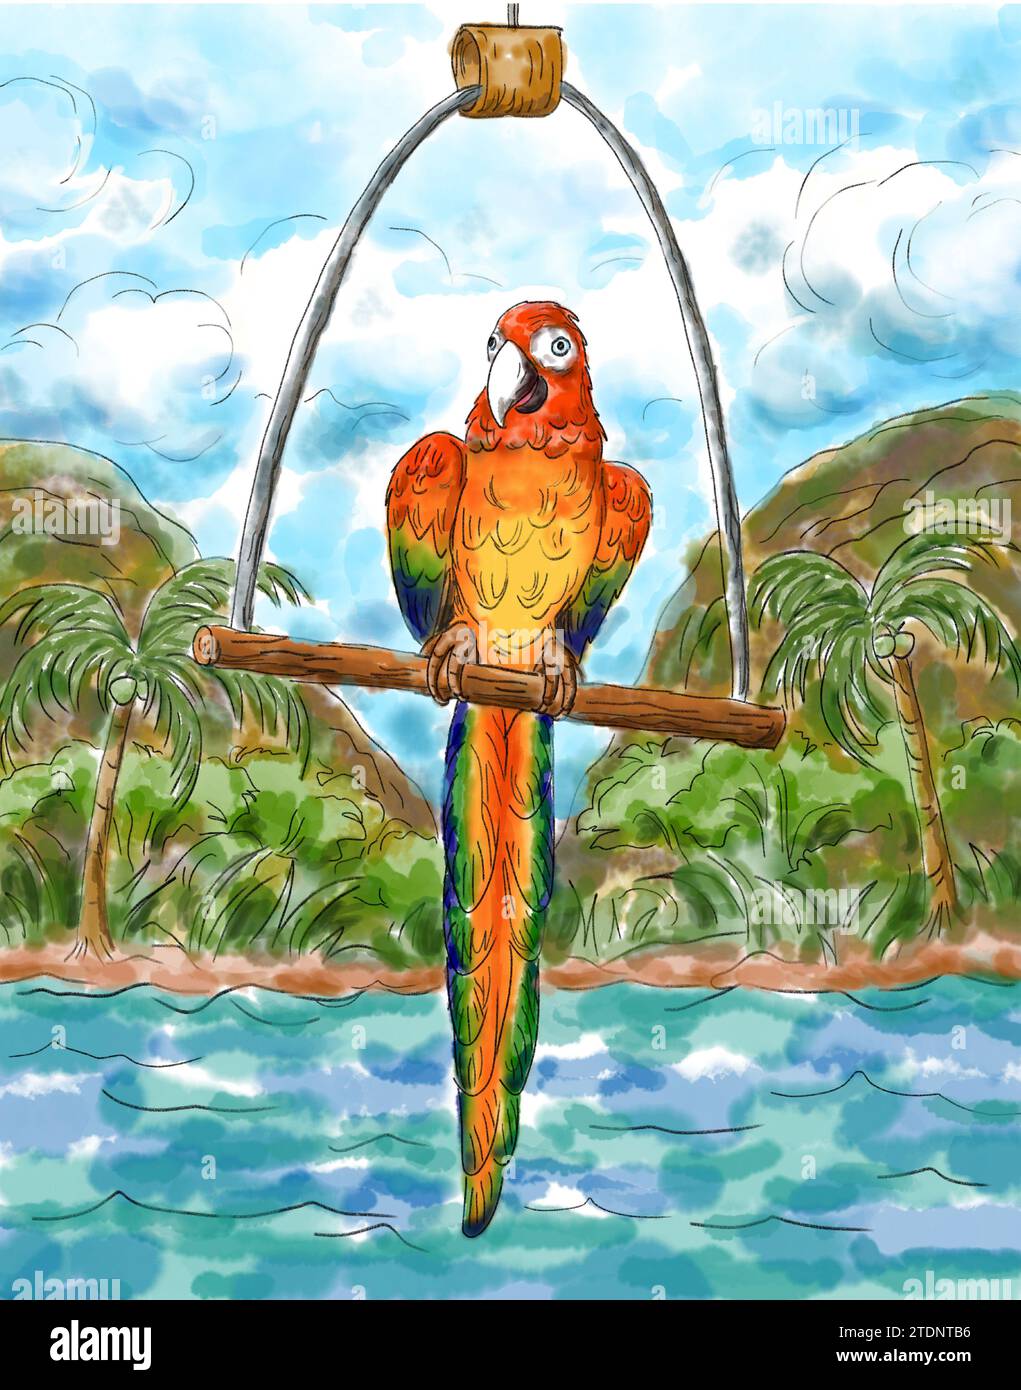 Le perroquet macaré écarlate sur une balançoire d'oiseau à l'arrière du voilier avec fond tropical d'île de plage. Illustration de peinture à l'aquarelle. Oiseaux animaux de compagnie an Banque D'Images